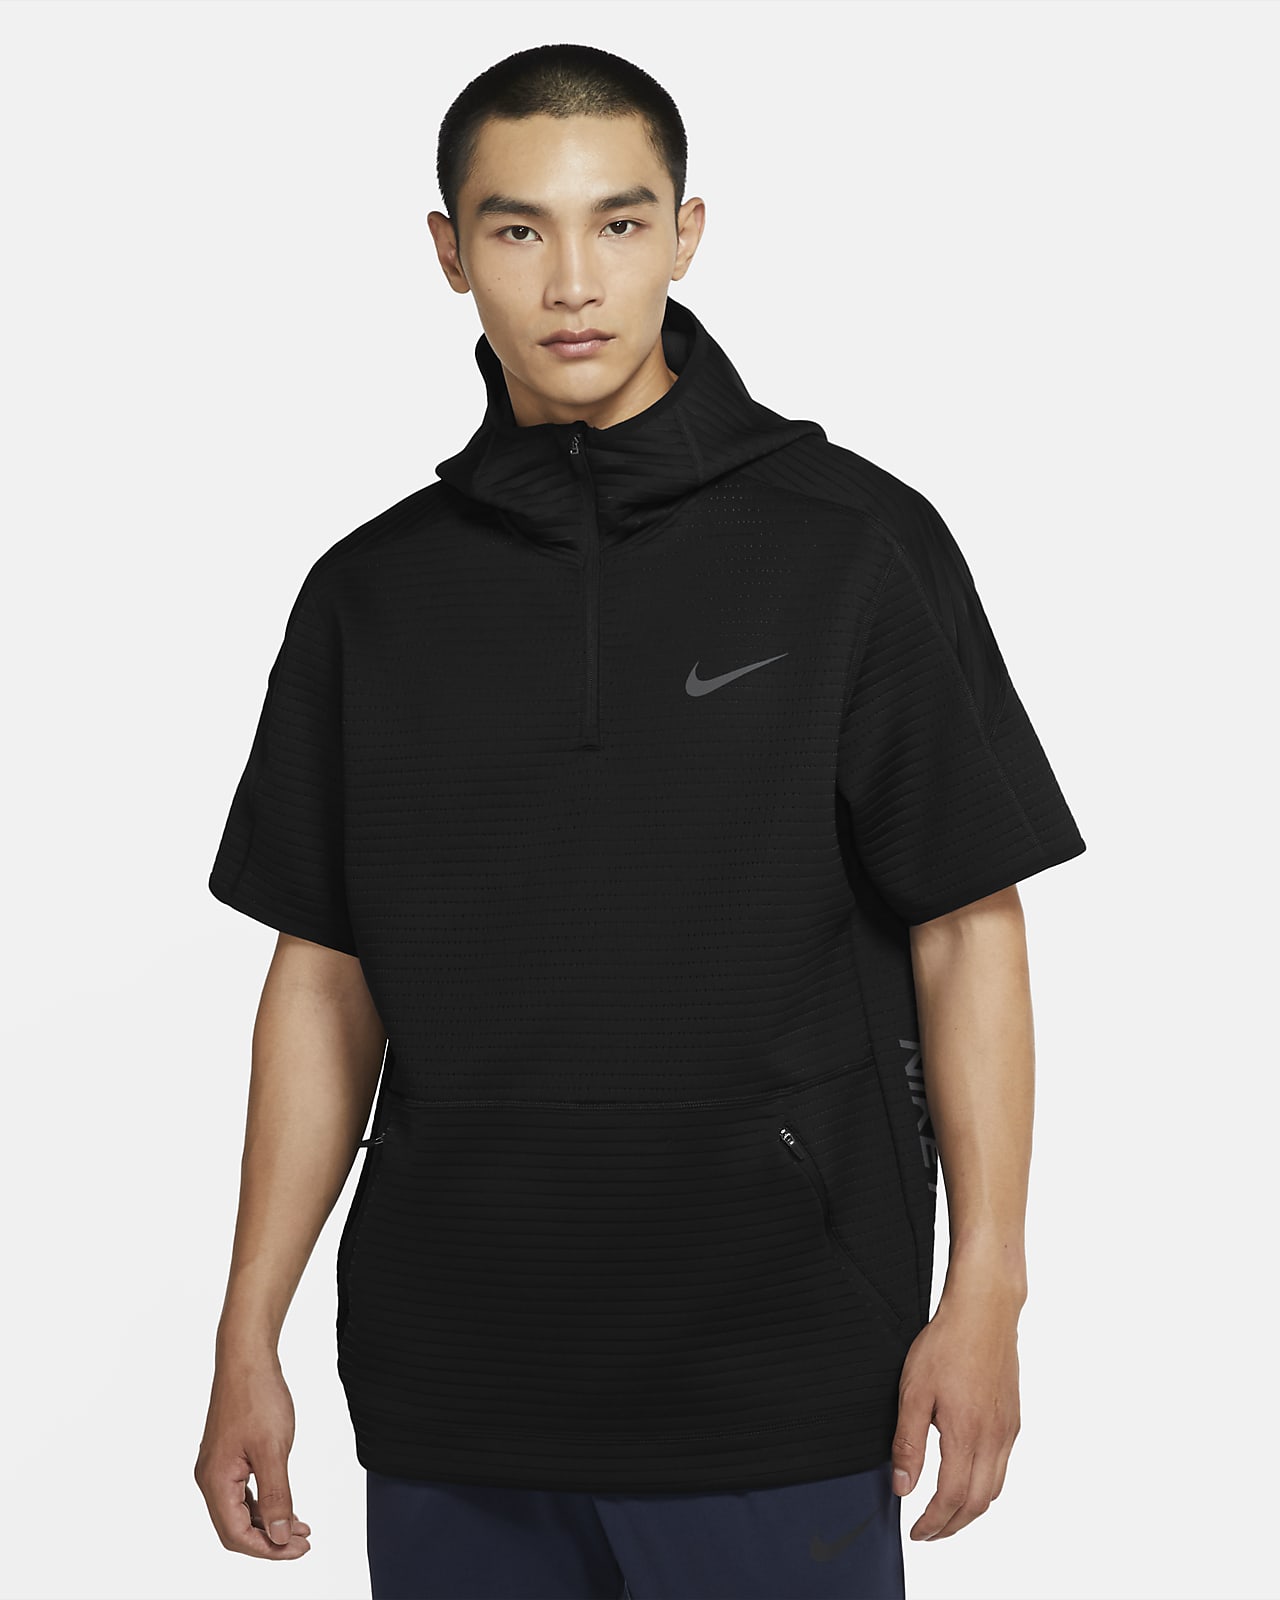 Sudadera con capucha de manga corta con cierre de 1/4 para hombre Nike Pro.  Nike.com